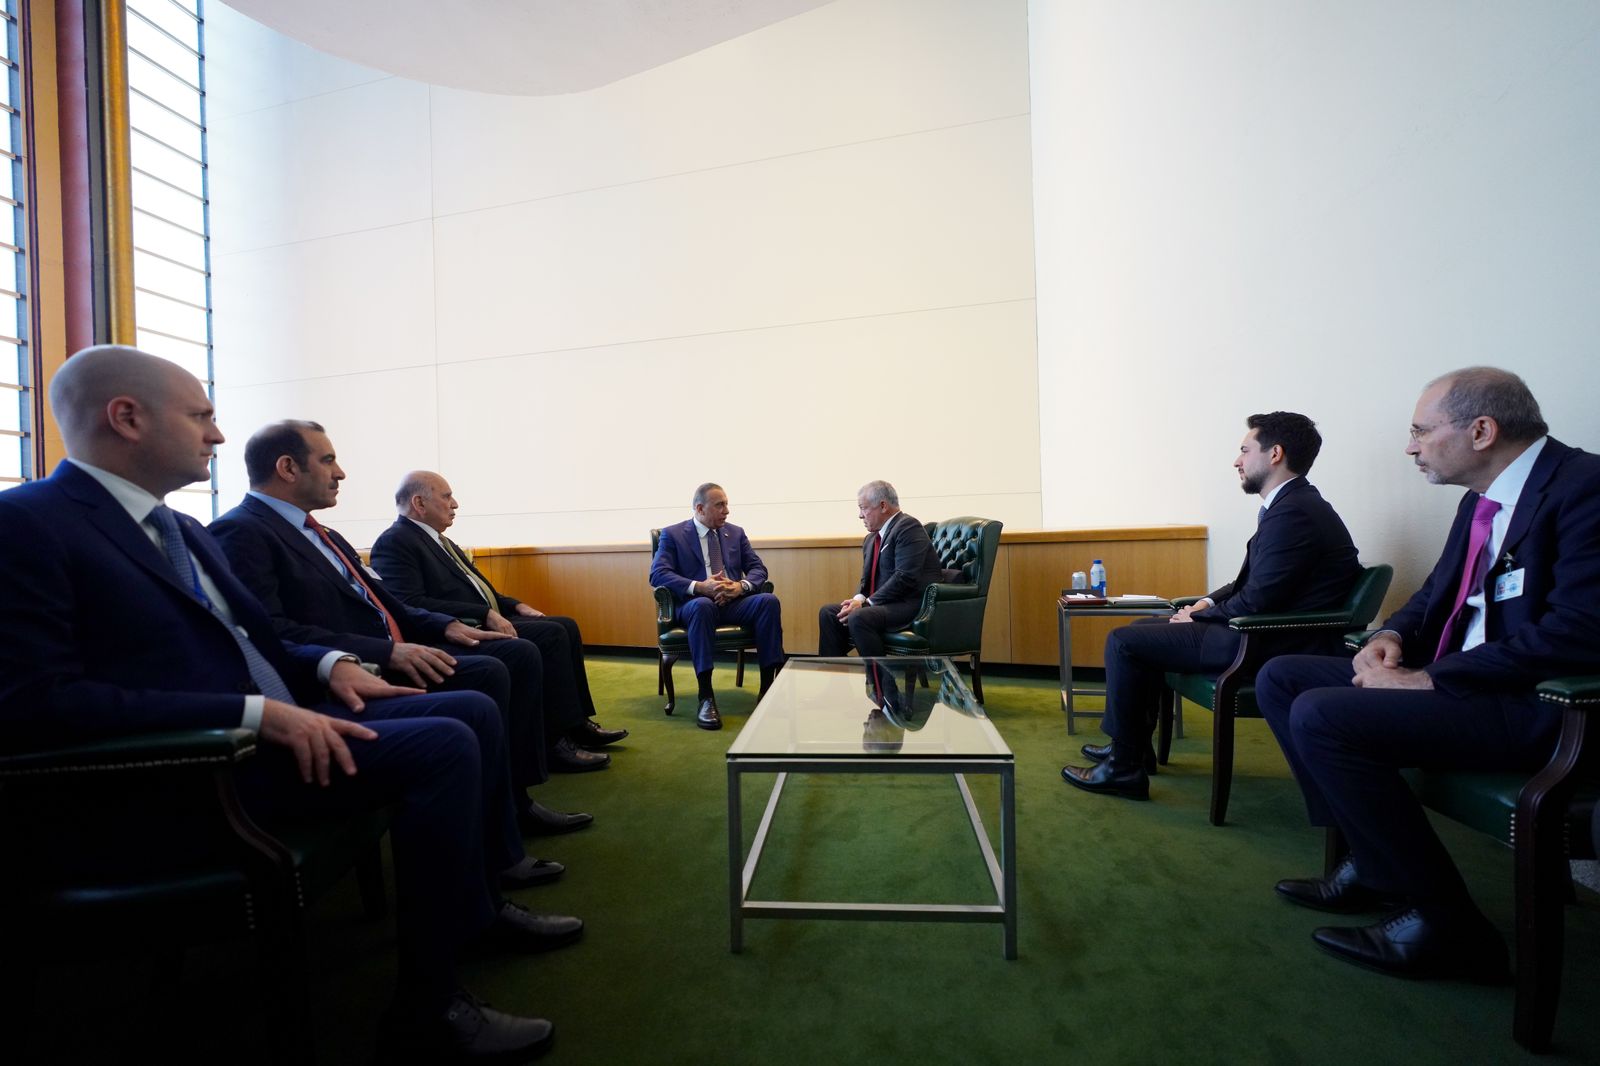 Al-Kadhimi Meets with King Abdullah II bin Al-Hussein of Jordan in New York